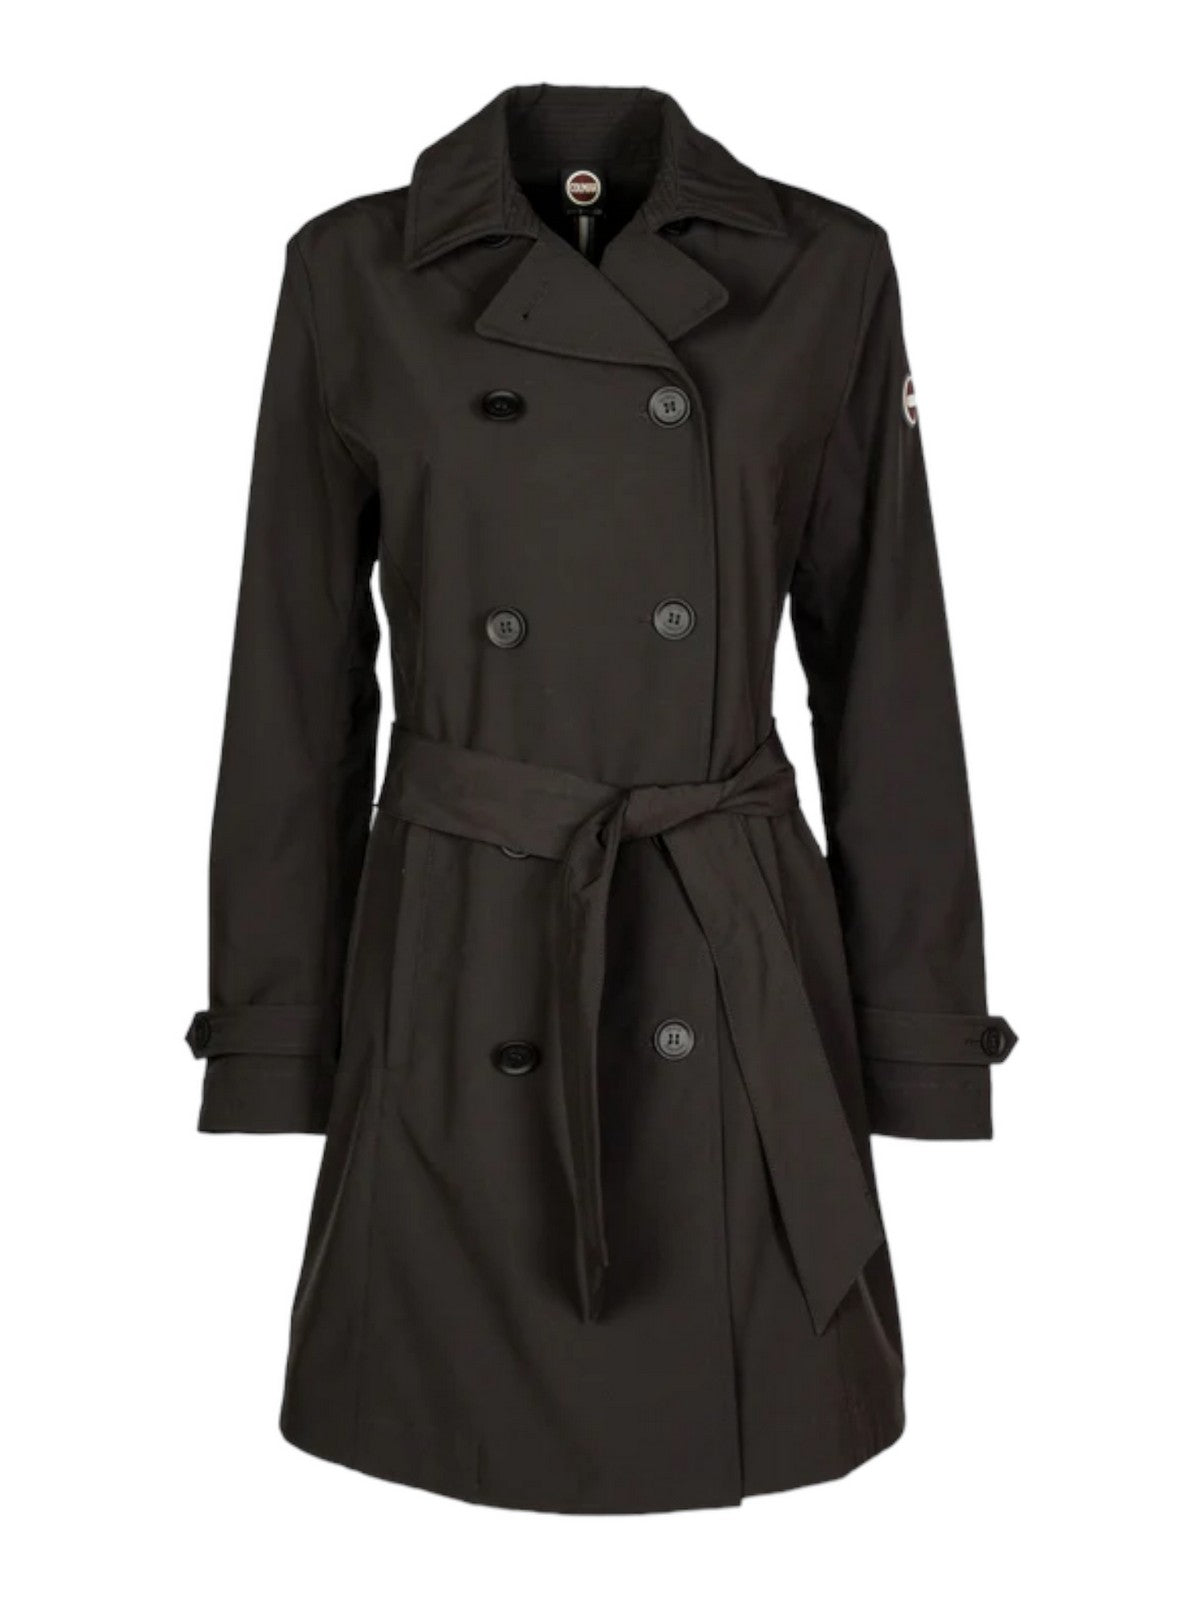 COLMAR Trench-coat femme 1934 6WV 99 Noir TISSU:92%POLYESTER + 8%ELASTANE